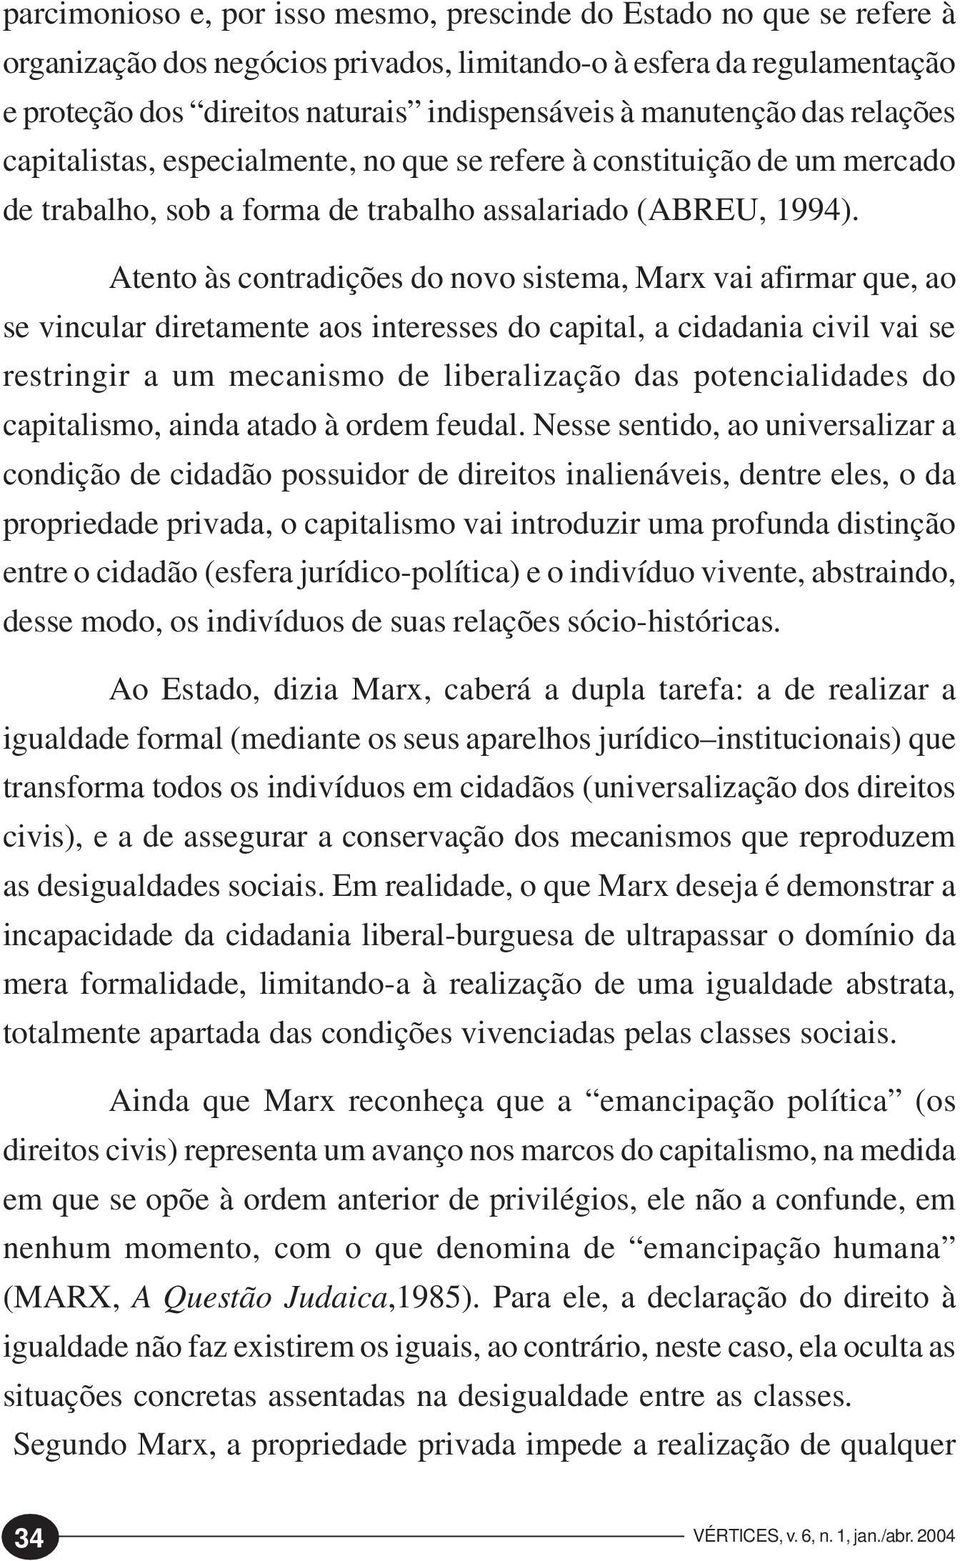 Atento às contradições do novo sistema, Marx vai afirmar que, ao se vincular diretamente aos interesses do capital, a cidadania civil vai se restringir a um mecanismo de liberalização das